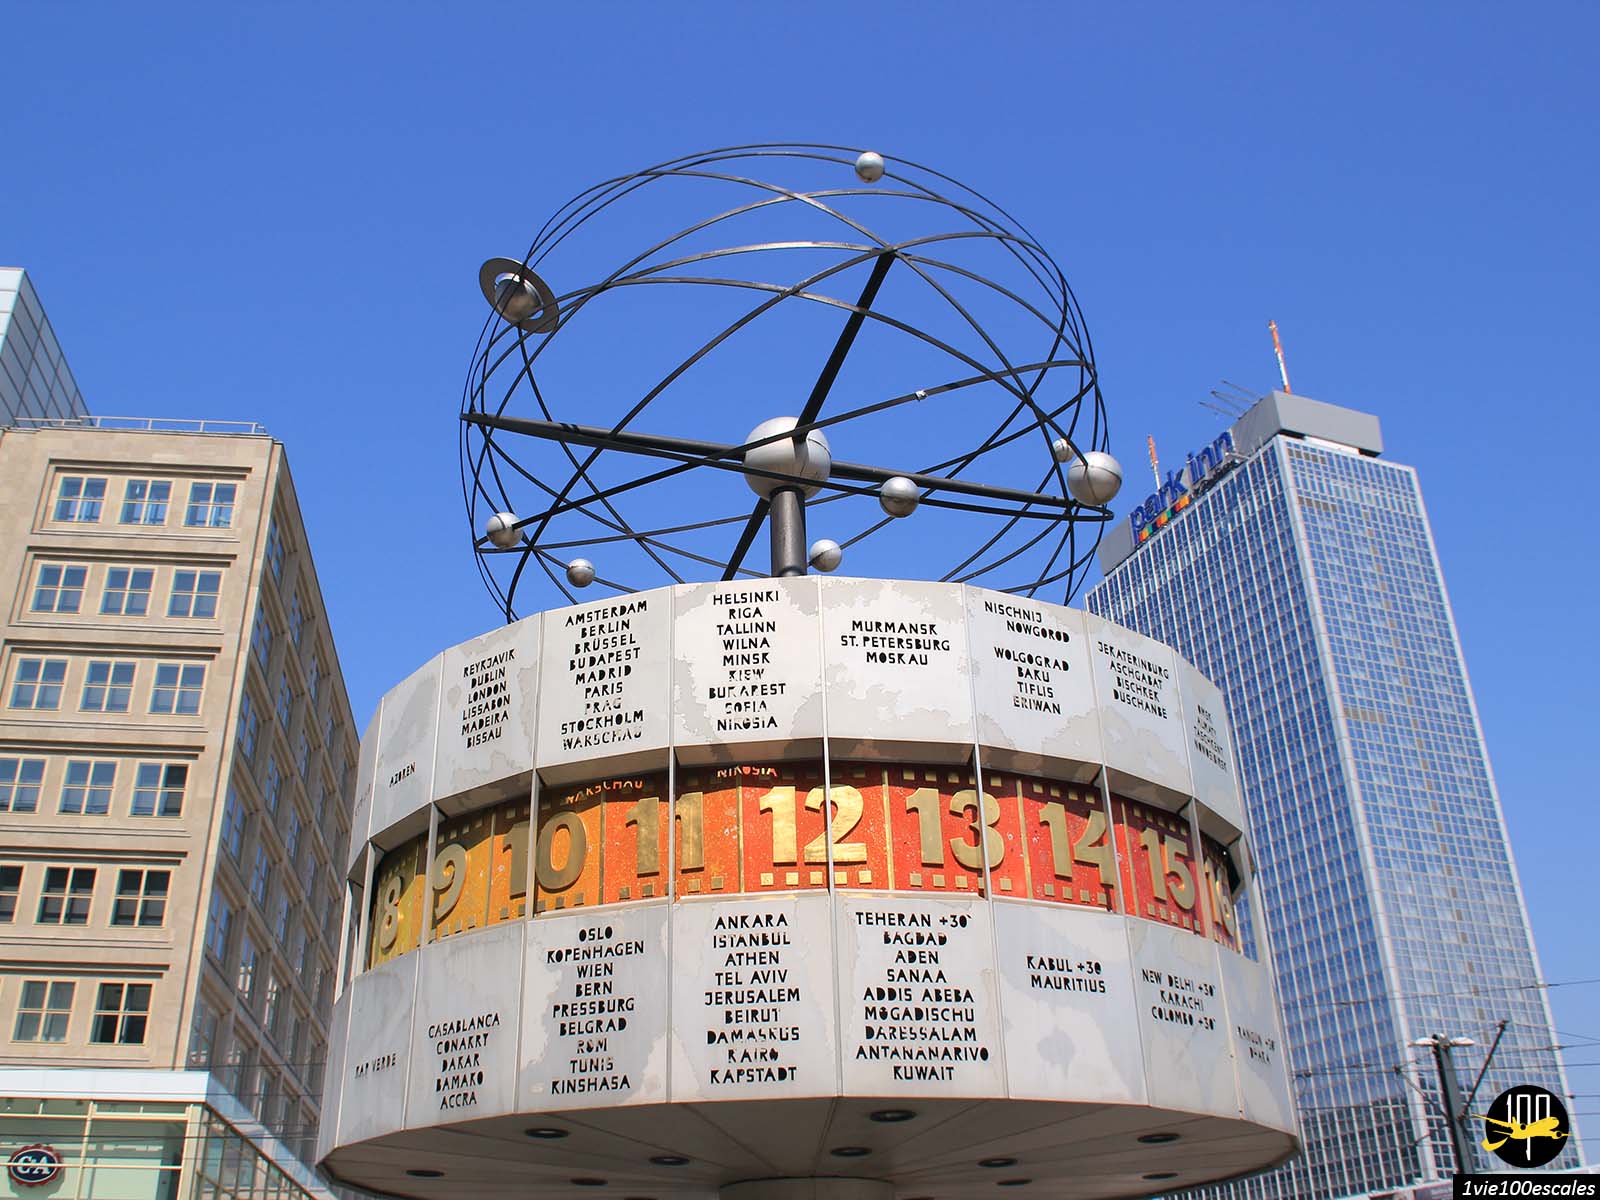 Sur la célèbre Alexanderplatz, en plein coeur de Berlin, se trouve l'horloge universelle Urania, grande structure circulaire en métal qui tourne en permanence et indique l'heure partout dans le monde